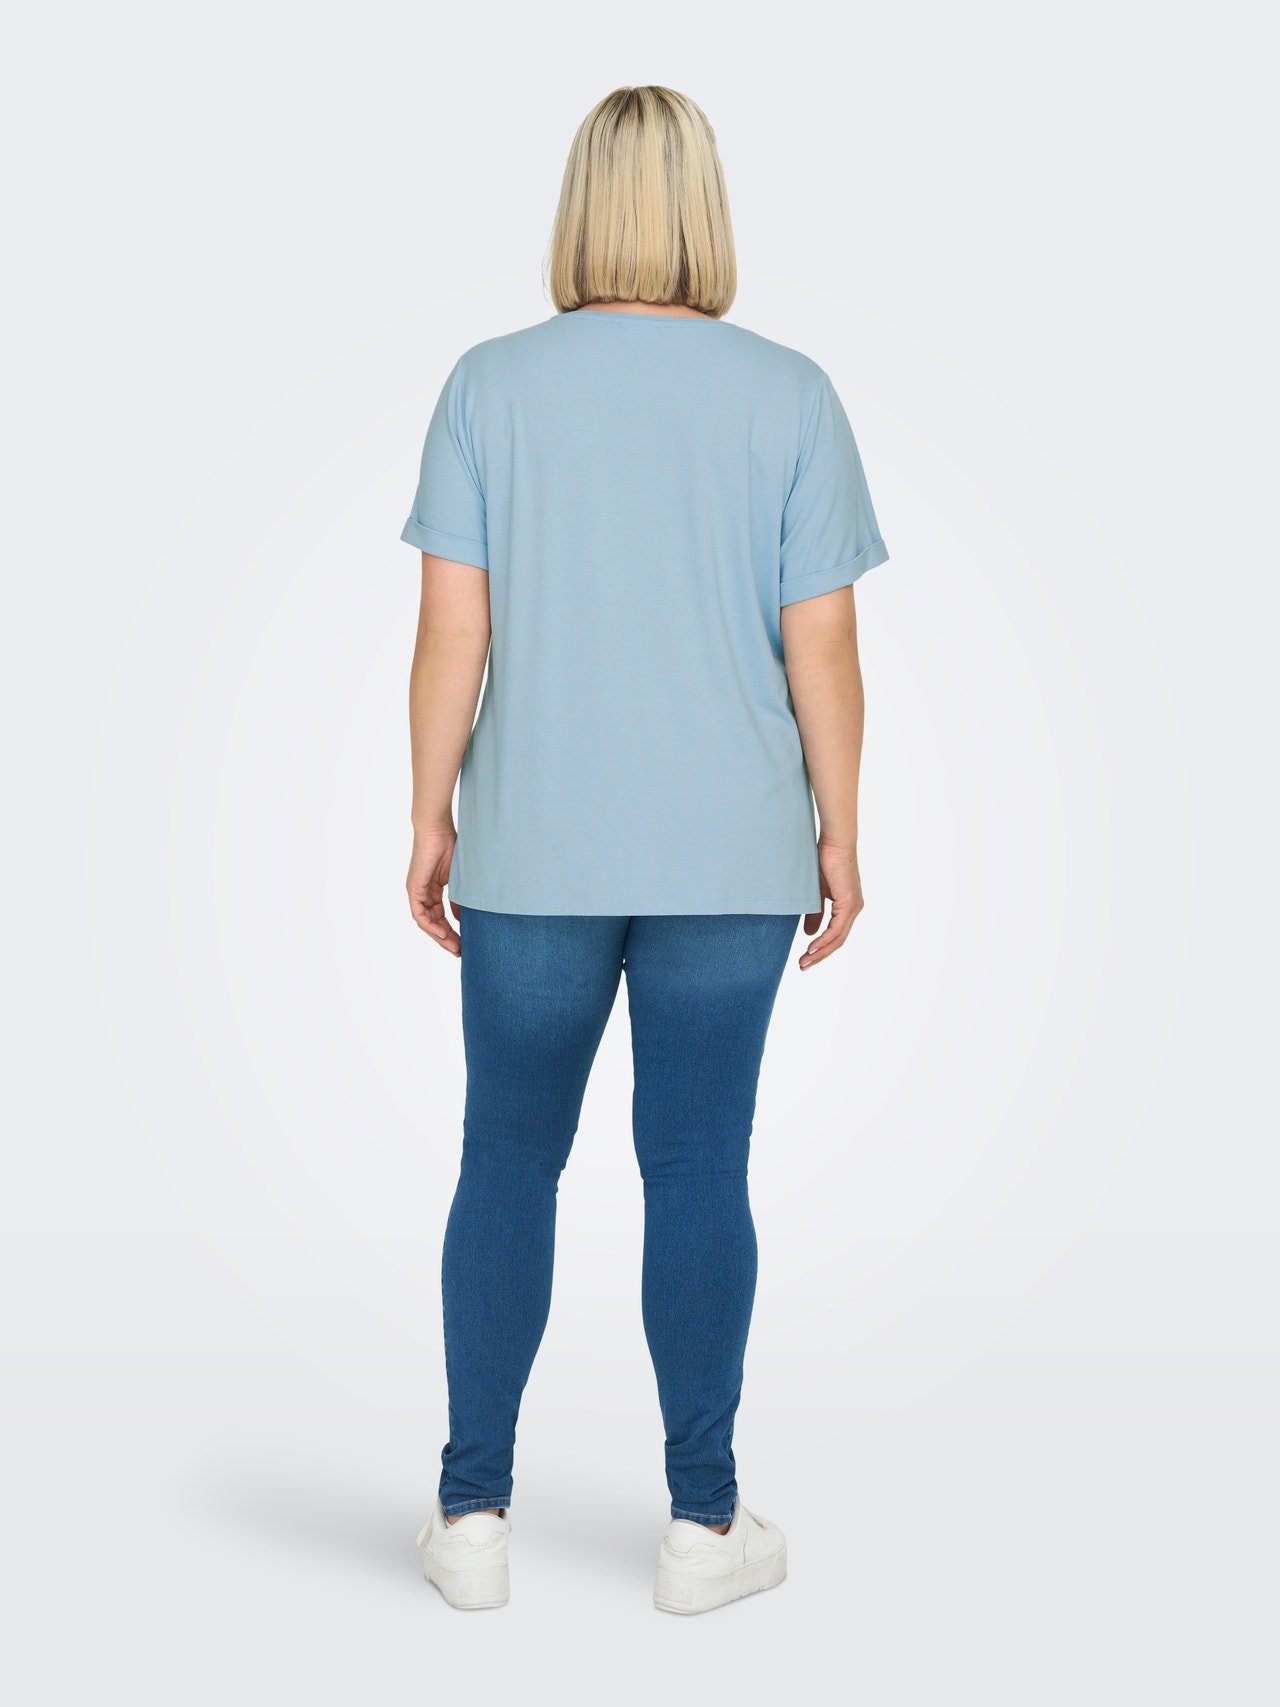 ONLY Curvy effen gekleurd T-shirt -Powder Blue - 15238147